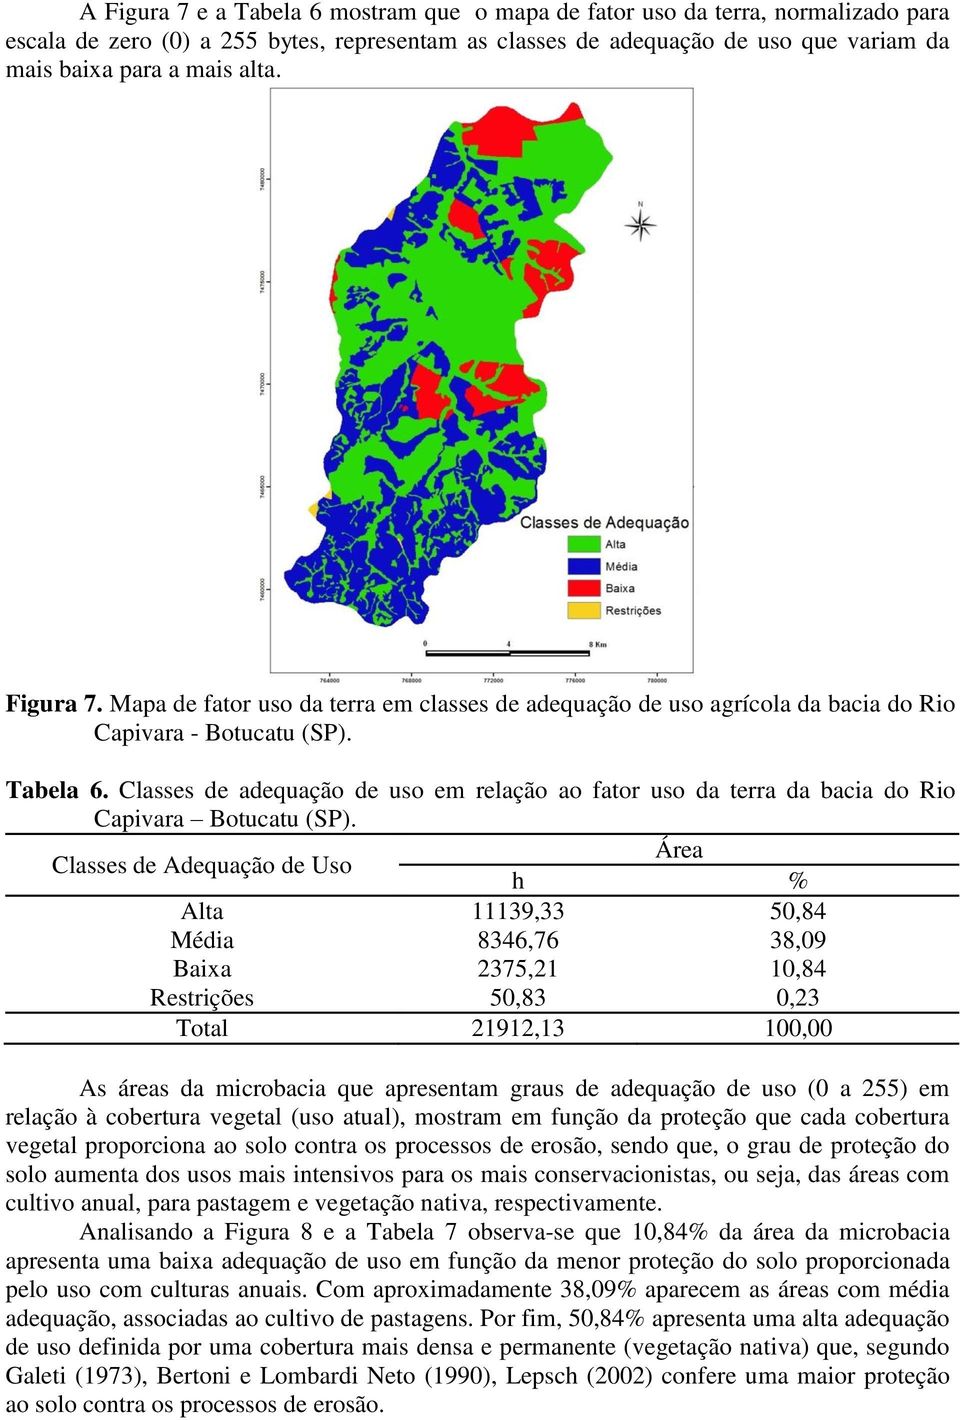 Classes de adequação de uso em relação ao fator uso da terra da bacia do Rio Capivara Botucatu (SP).